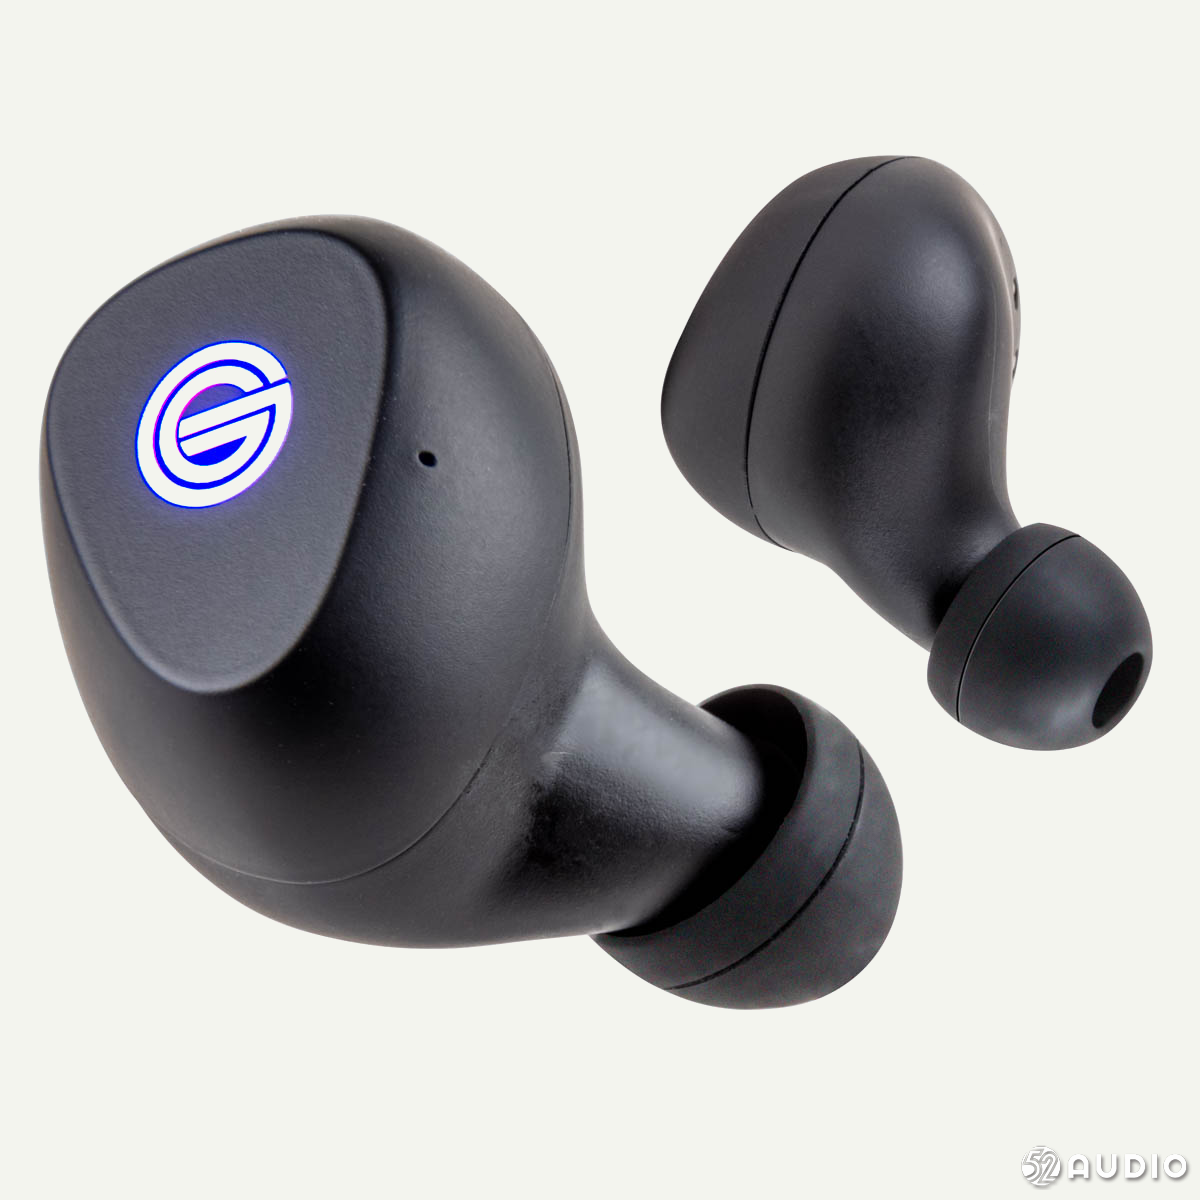 歌德发布首款真无线耳机 GT220：36 小时续航、Qi 无线充电-我爱音频网